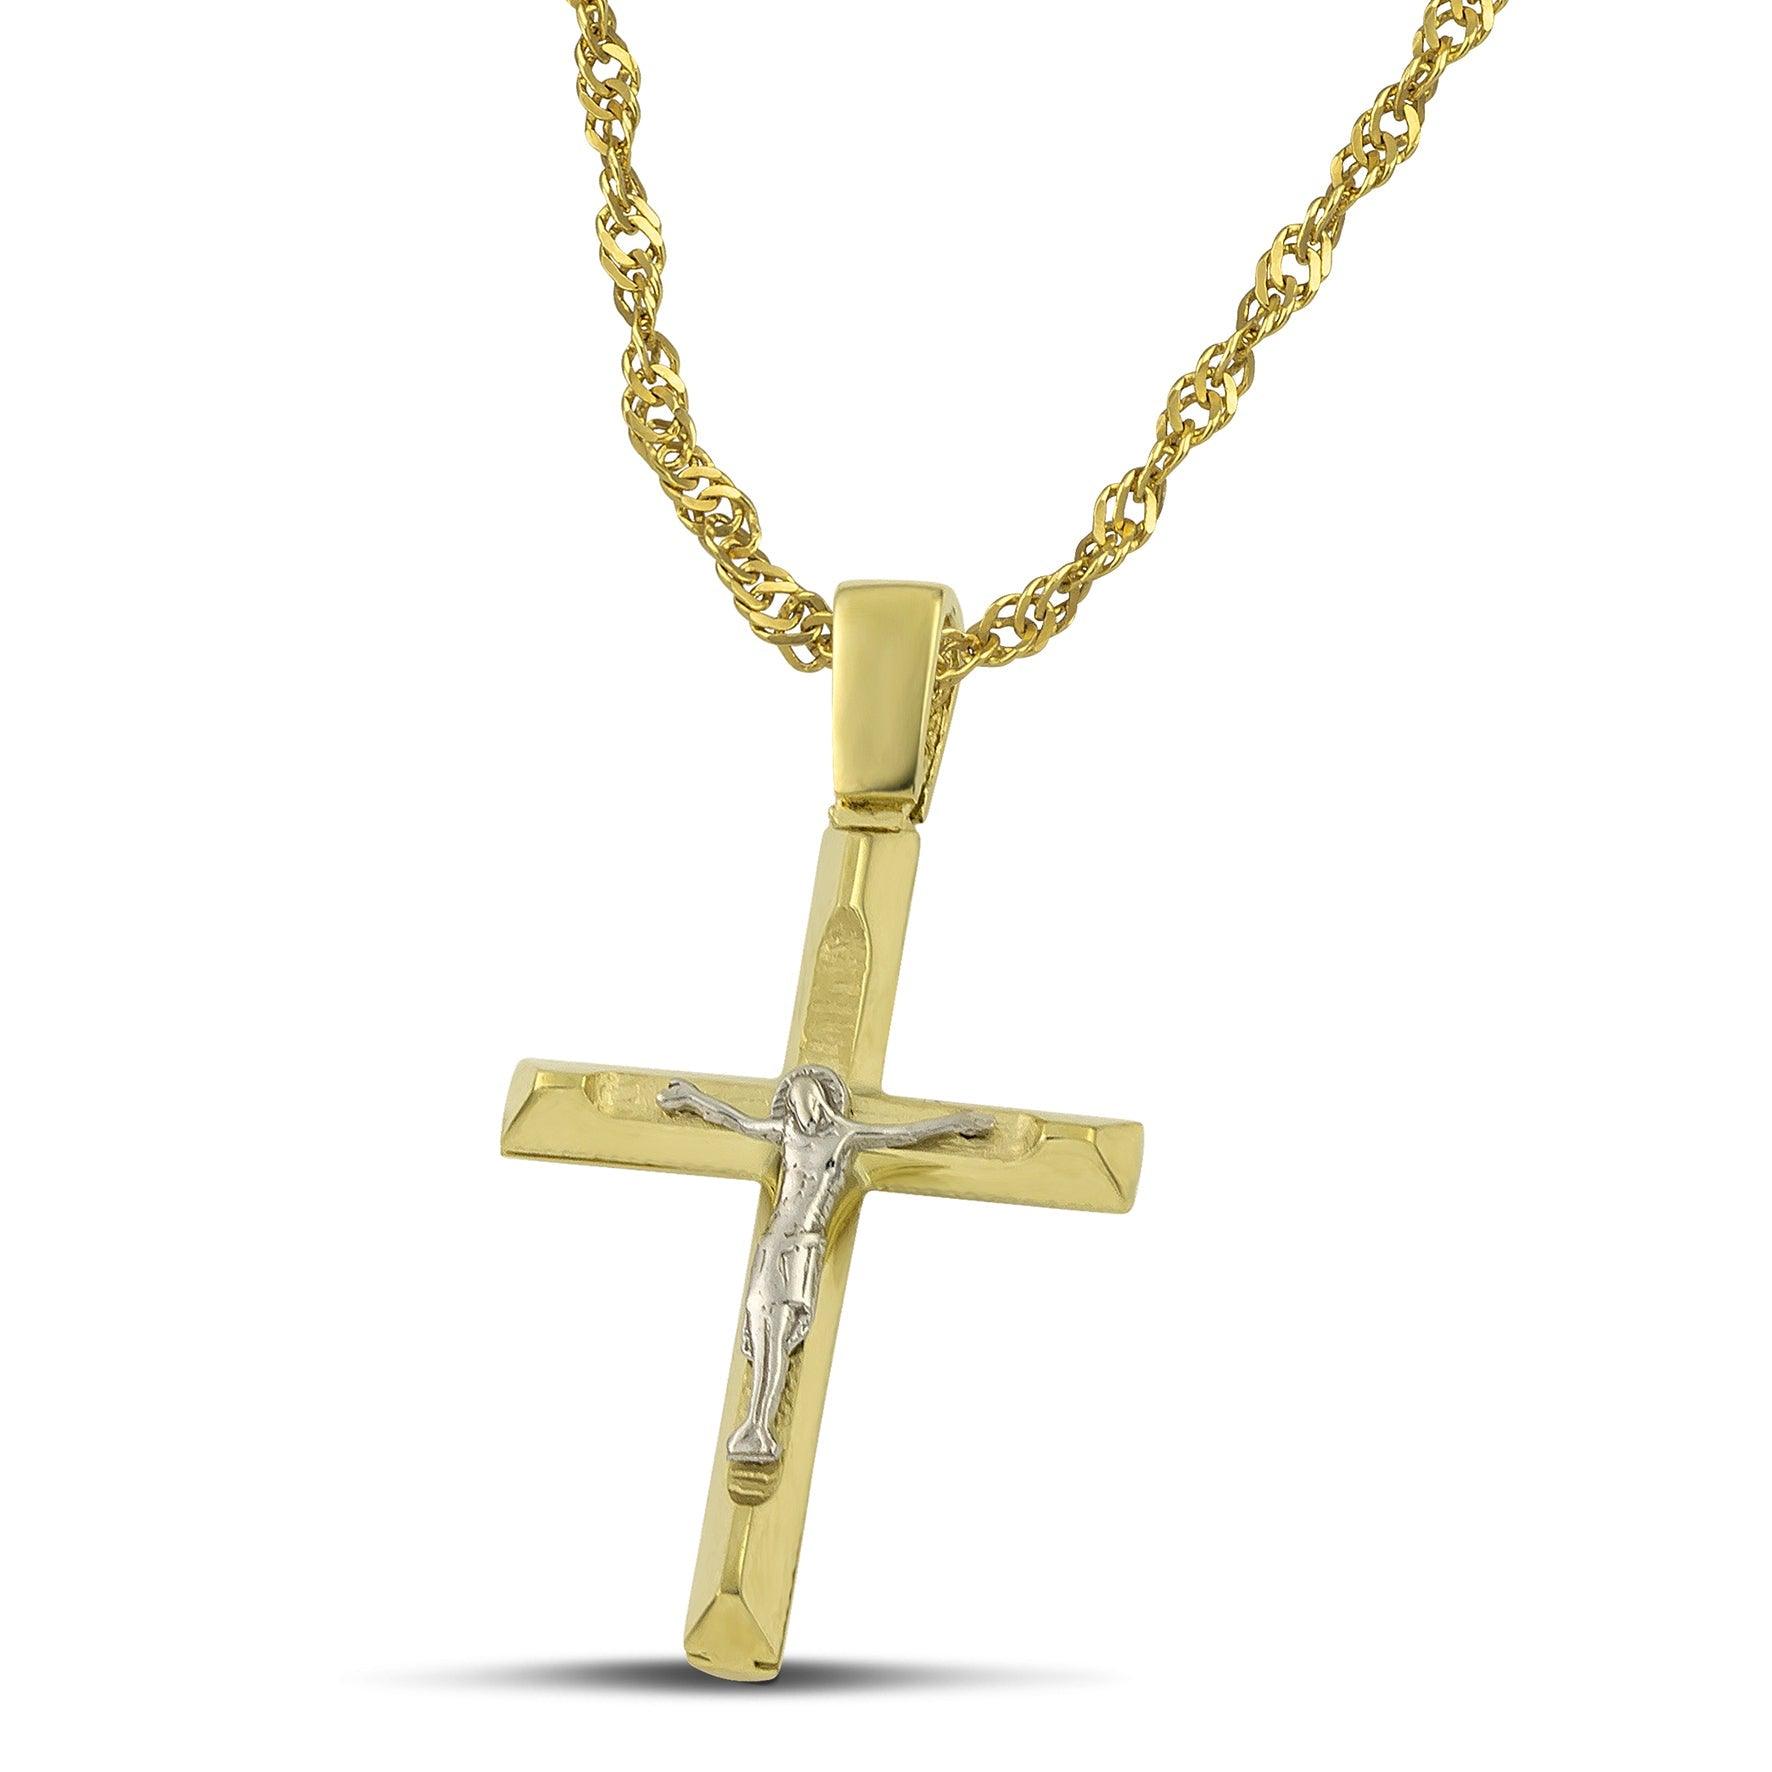 Μοντέρνος σταυρός από χρυσό Κ14 για αγόρι, με τον Εσταυρωμένο με πλεκτή αλυσίδα.